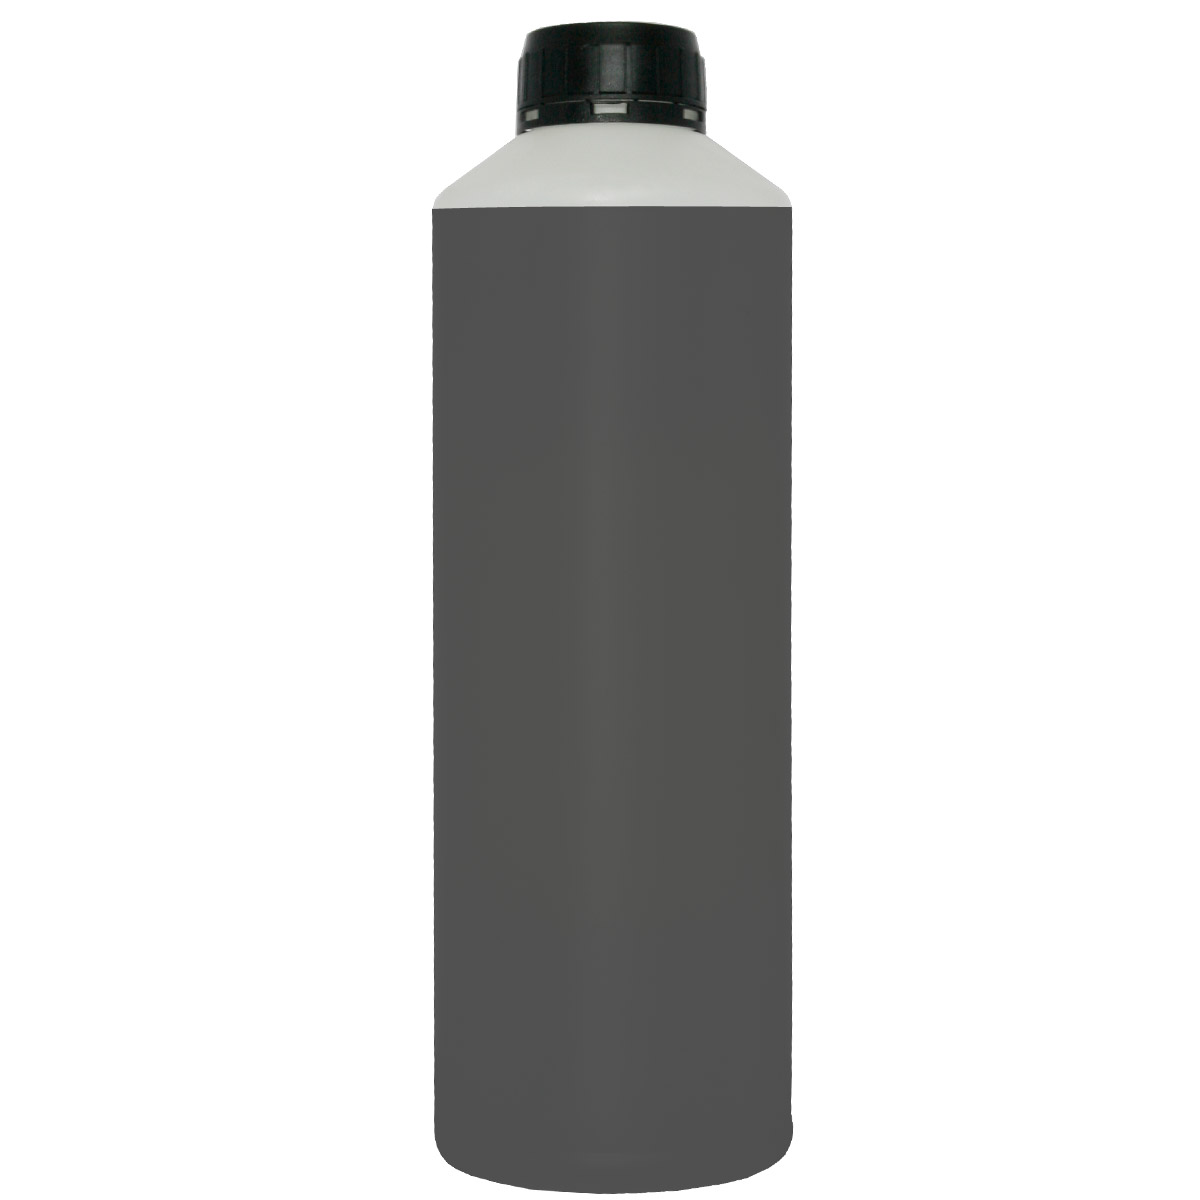 Χύμα Μελάνι για HP BLACK 500ml inkjet refill ink μαύρο μελάνι για γέμισμα / αναγόμωση δοχείου εκτυπωτή ( ink cartridge ) inkjet